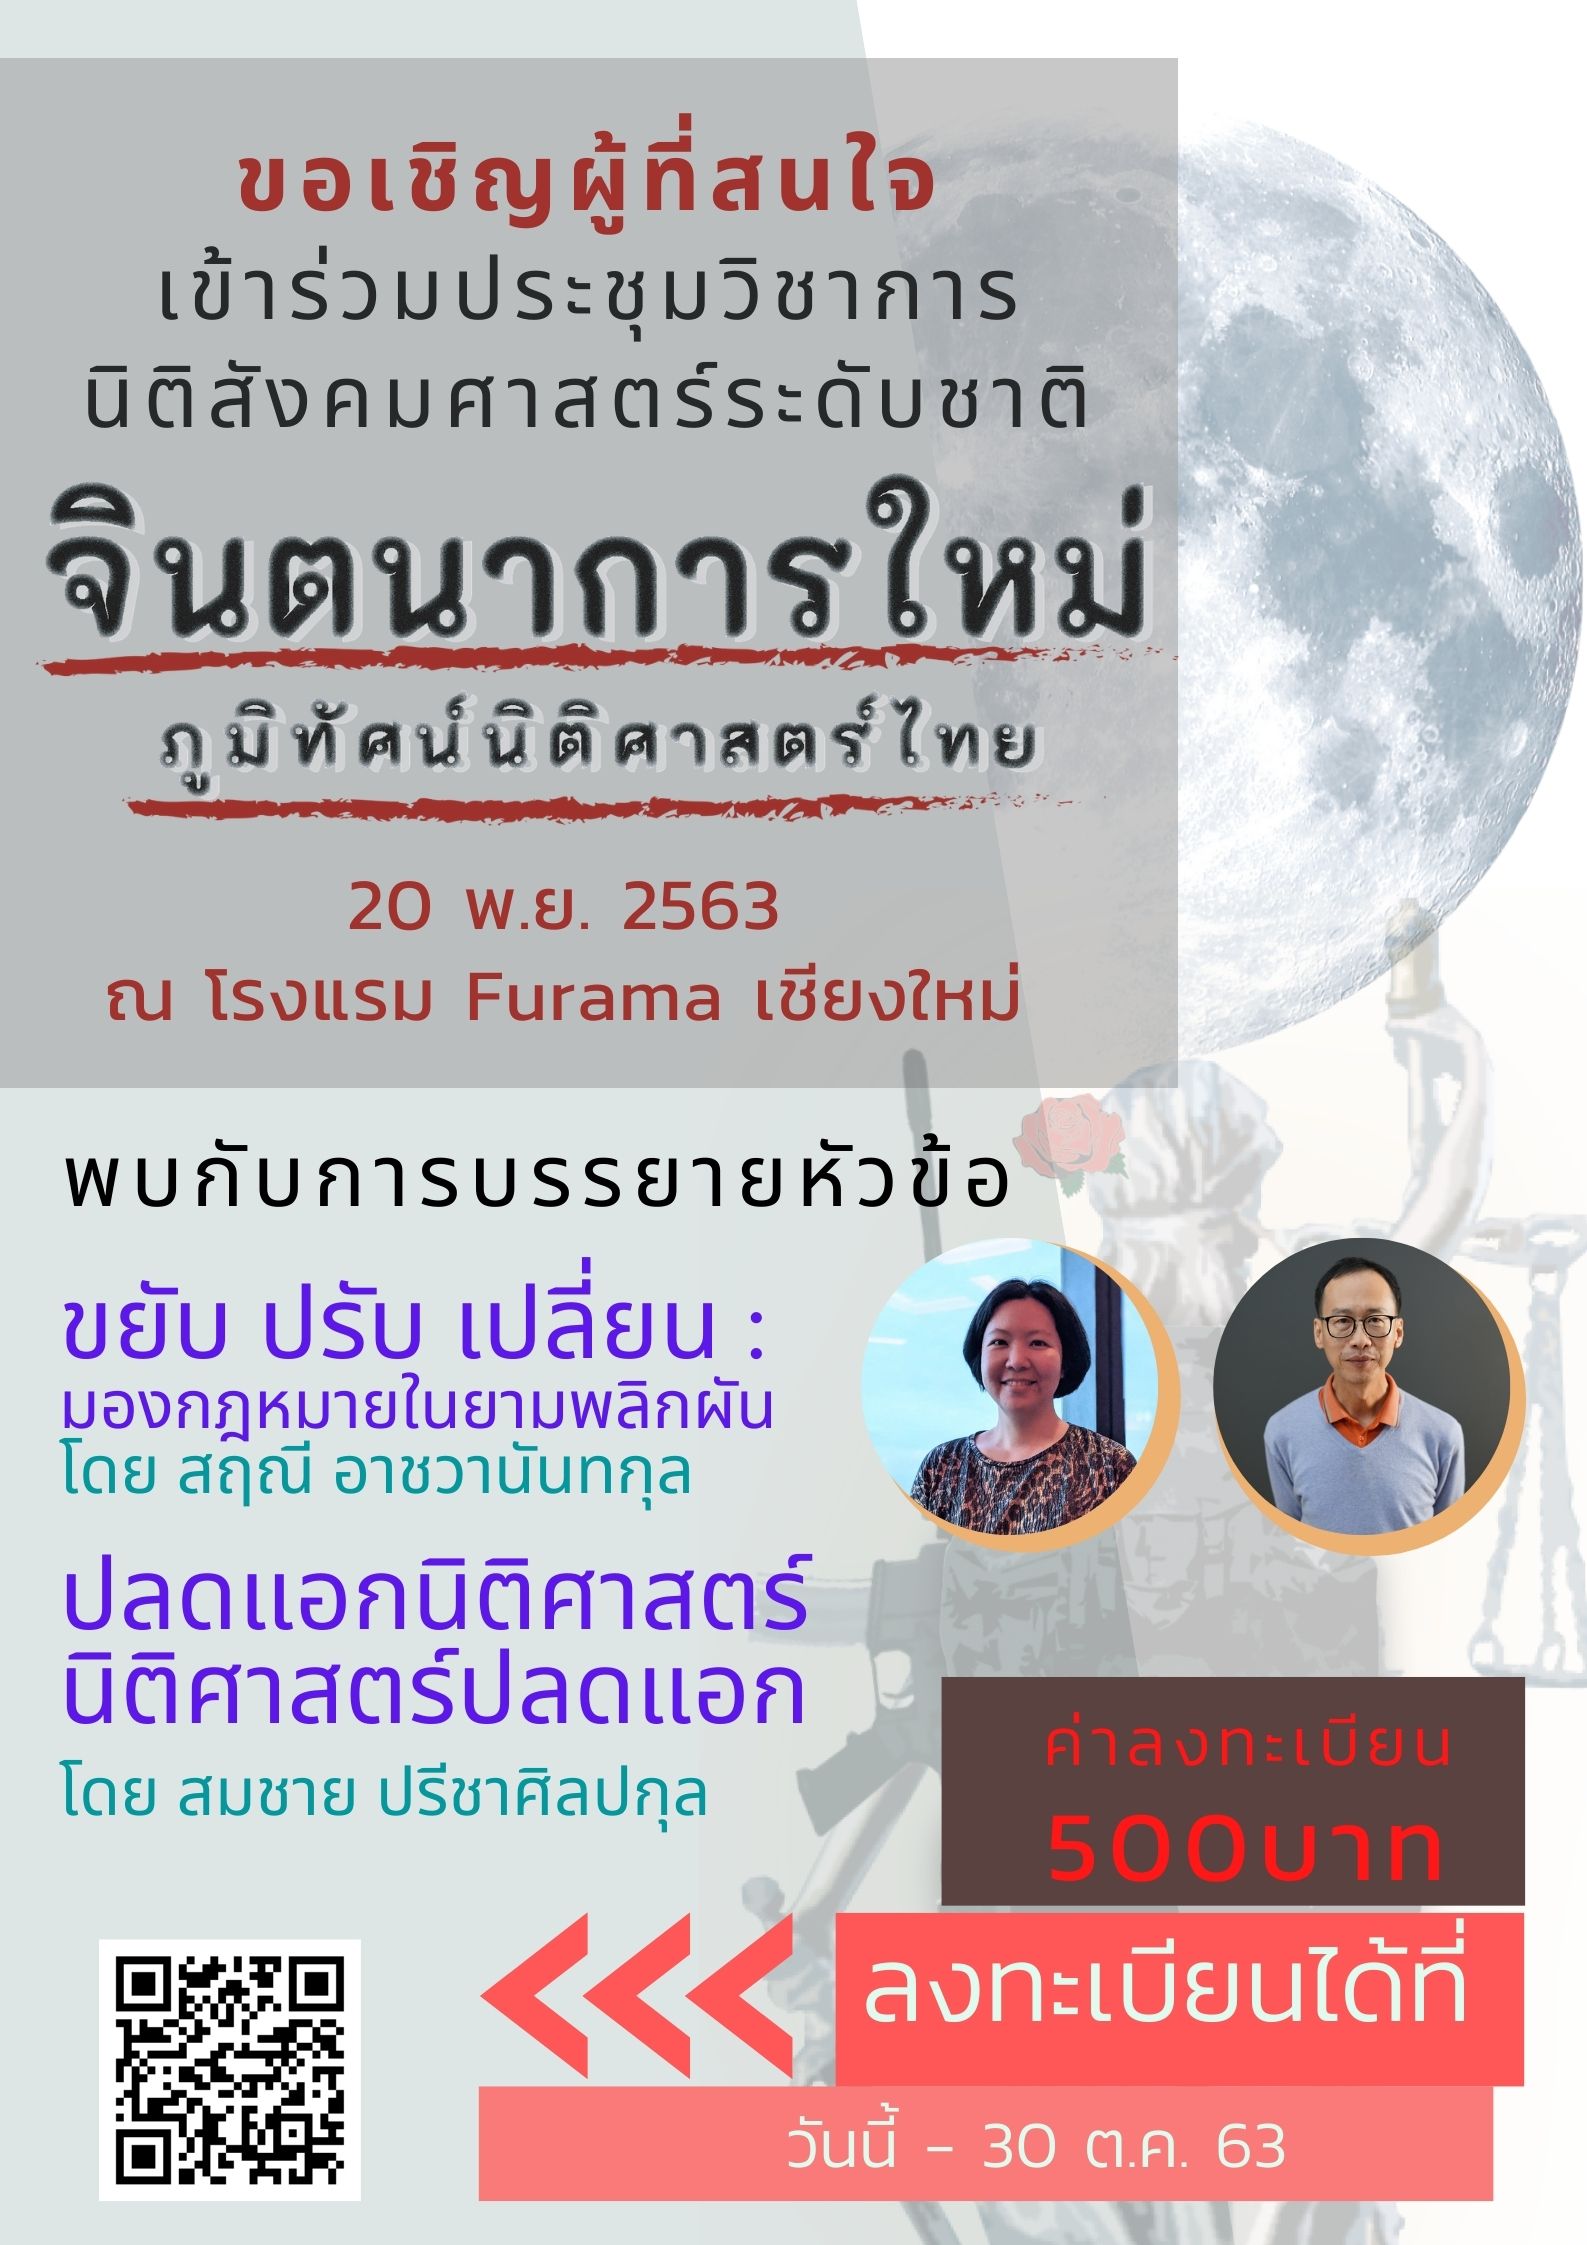 เชิญชวนผู้ที่สนใจลงทะเบียนเข้าร่วมประชุมวิชาการ หัวข้อ จินตนาการใหม่ภูมิทัศน์นิติศาสตร์ไทย